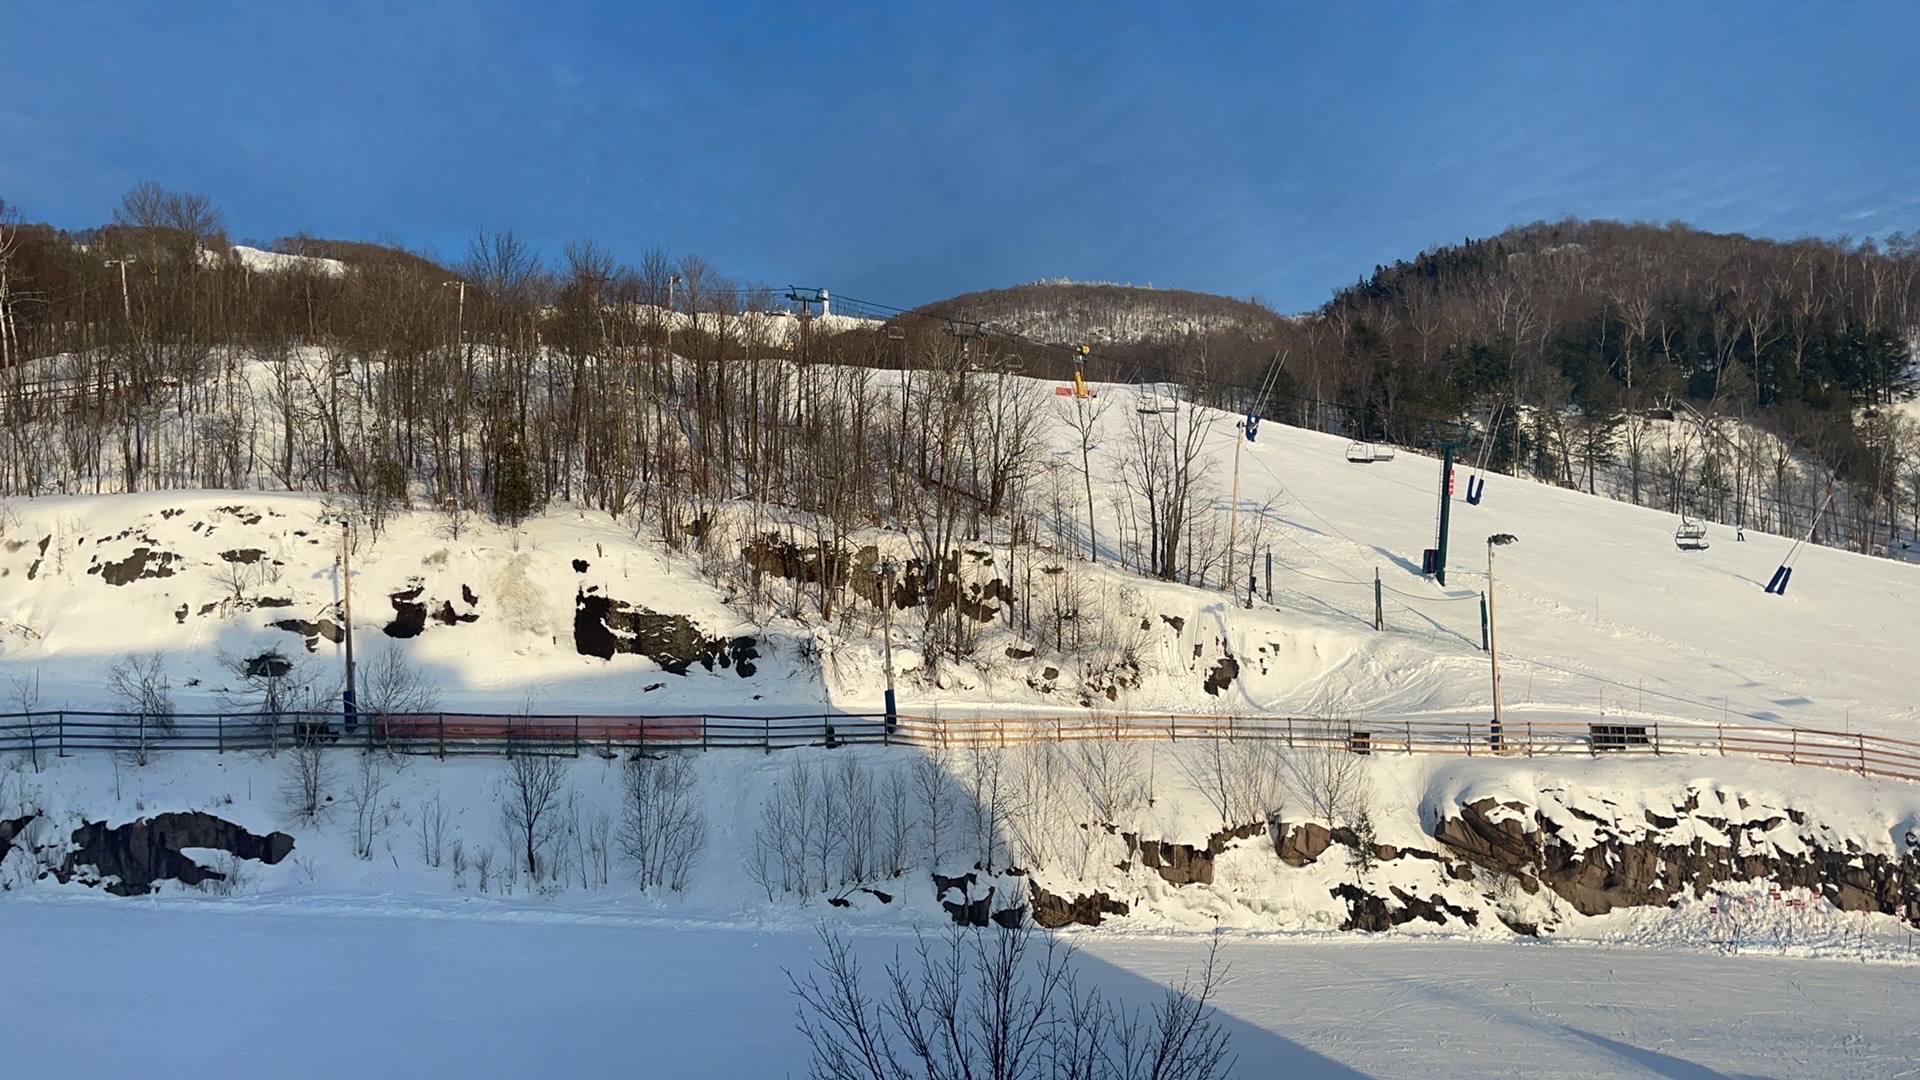 为了去滑雪定了这个酒店，附近的酒店都是围绕着雪场，去滑雪都是方便的。酒店楼下可以租雪具，买票，附近吃